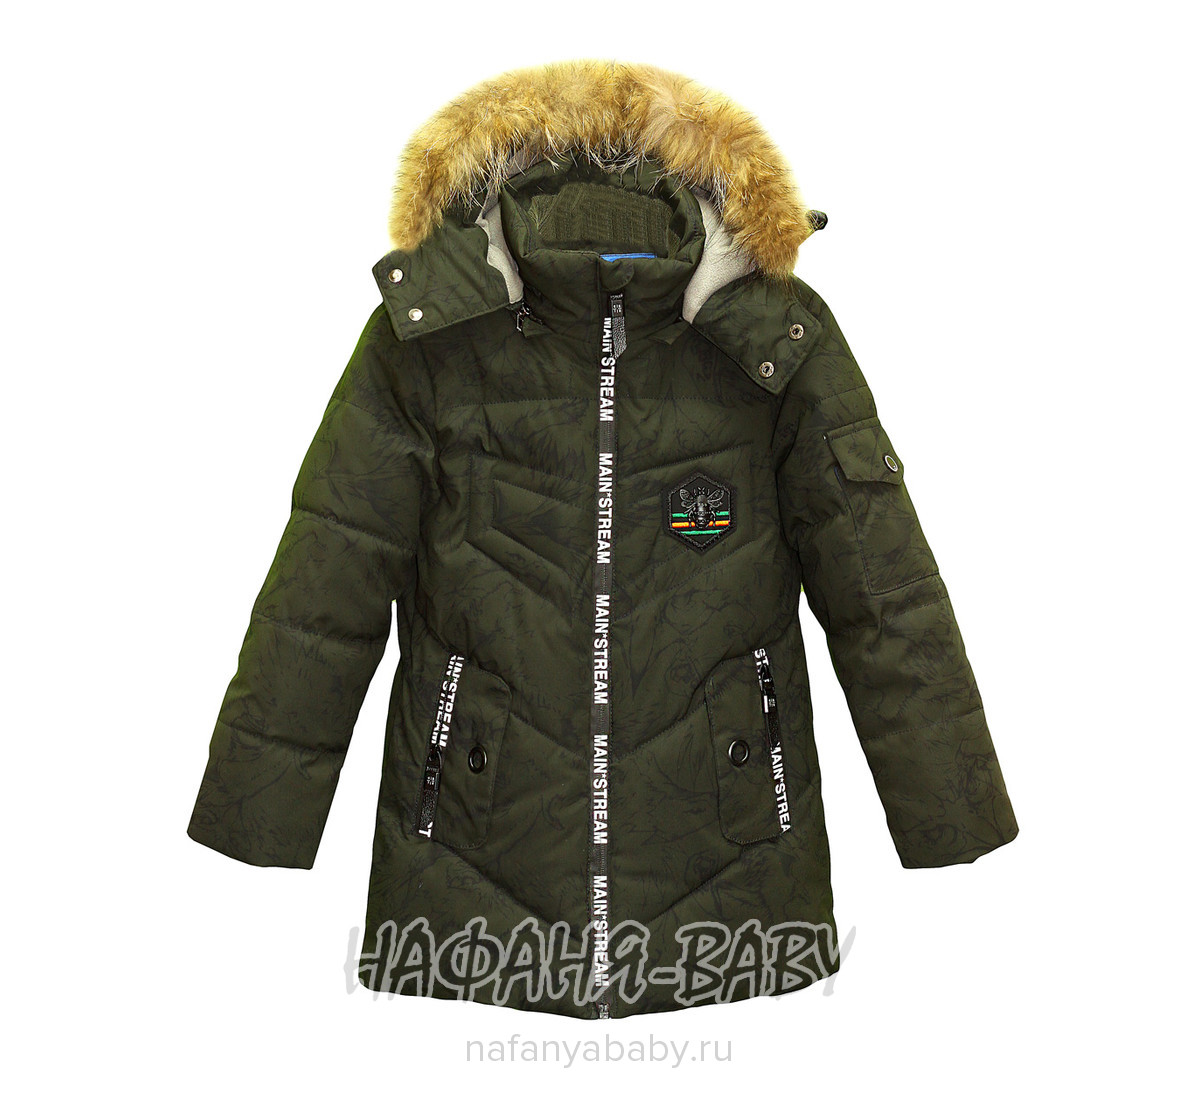 Зимняя куртка для мальчика VIPONOV, купить в интернет магазине Нафаня. арт: 1812.